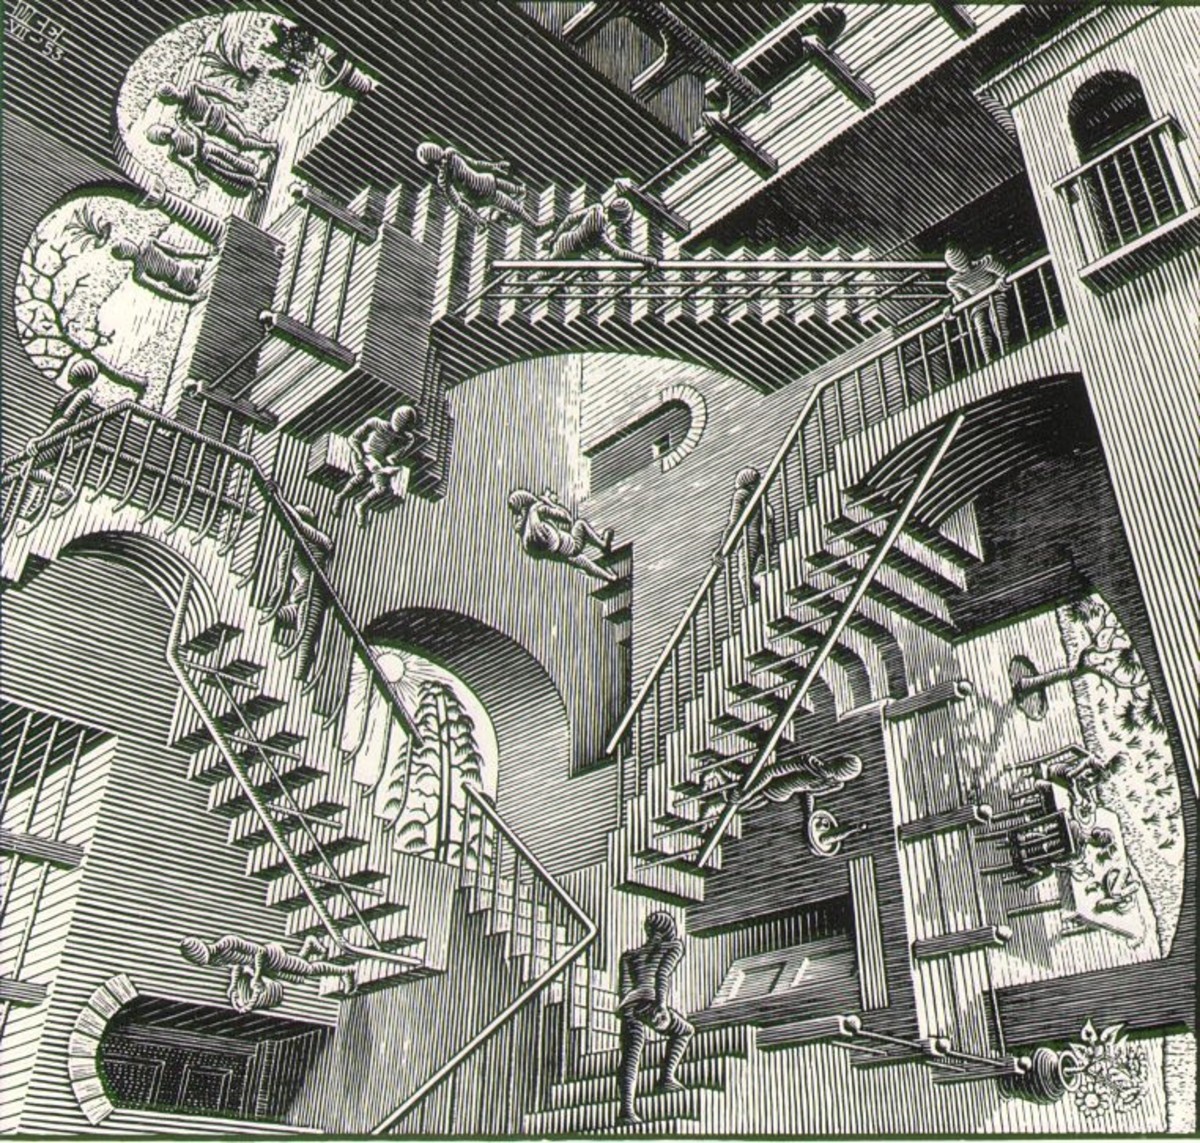 Escher: "Relativity"